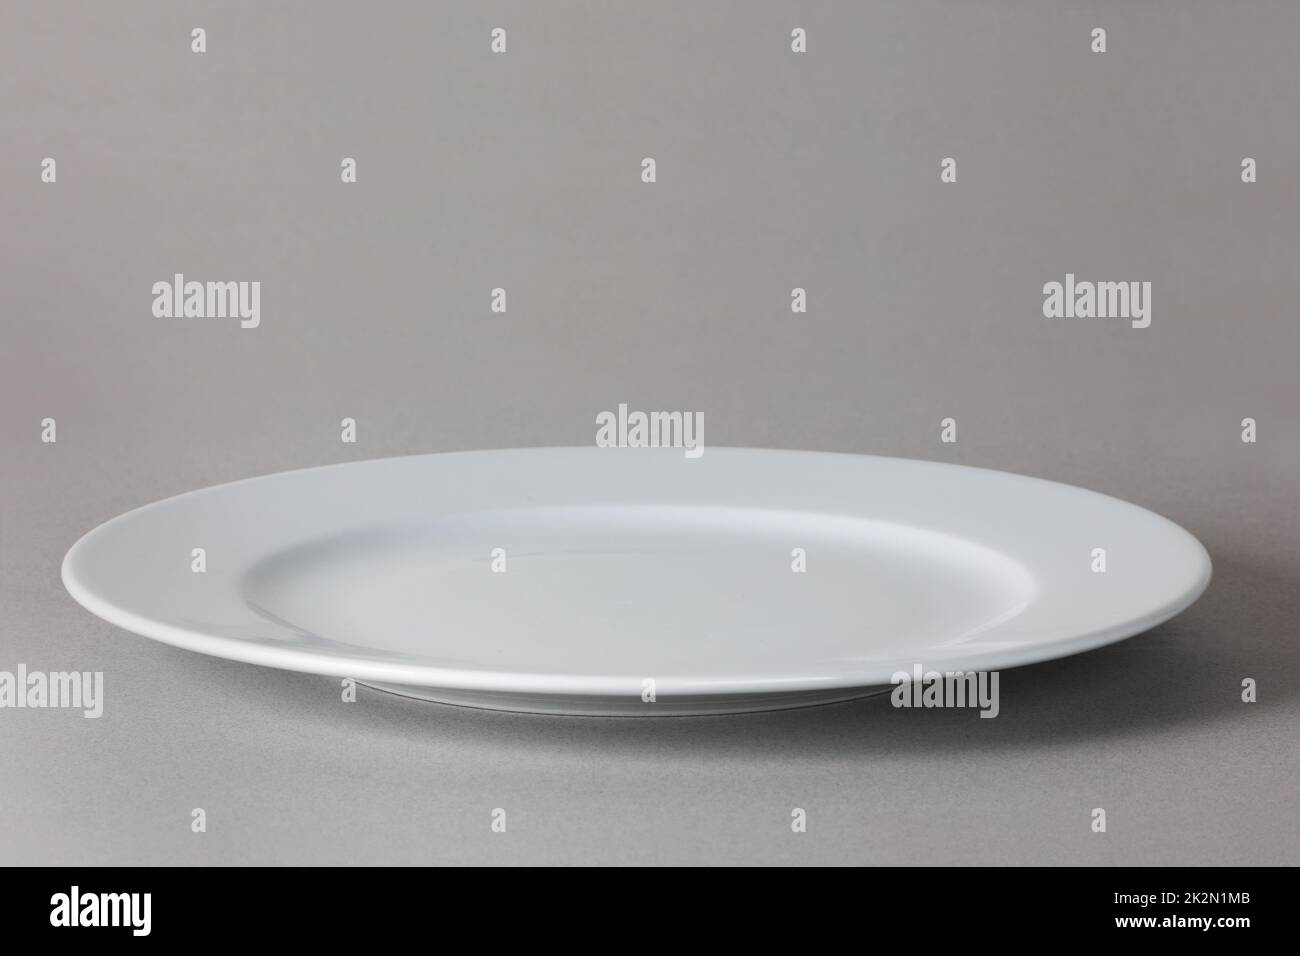 Vue angulaire d'une assiette à dîner blanche sur fond neutre avec ombre Banque D'Images